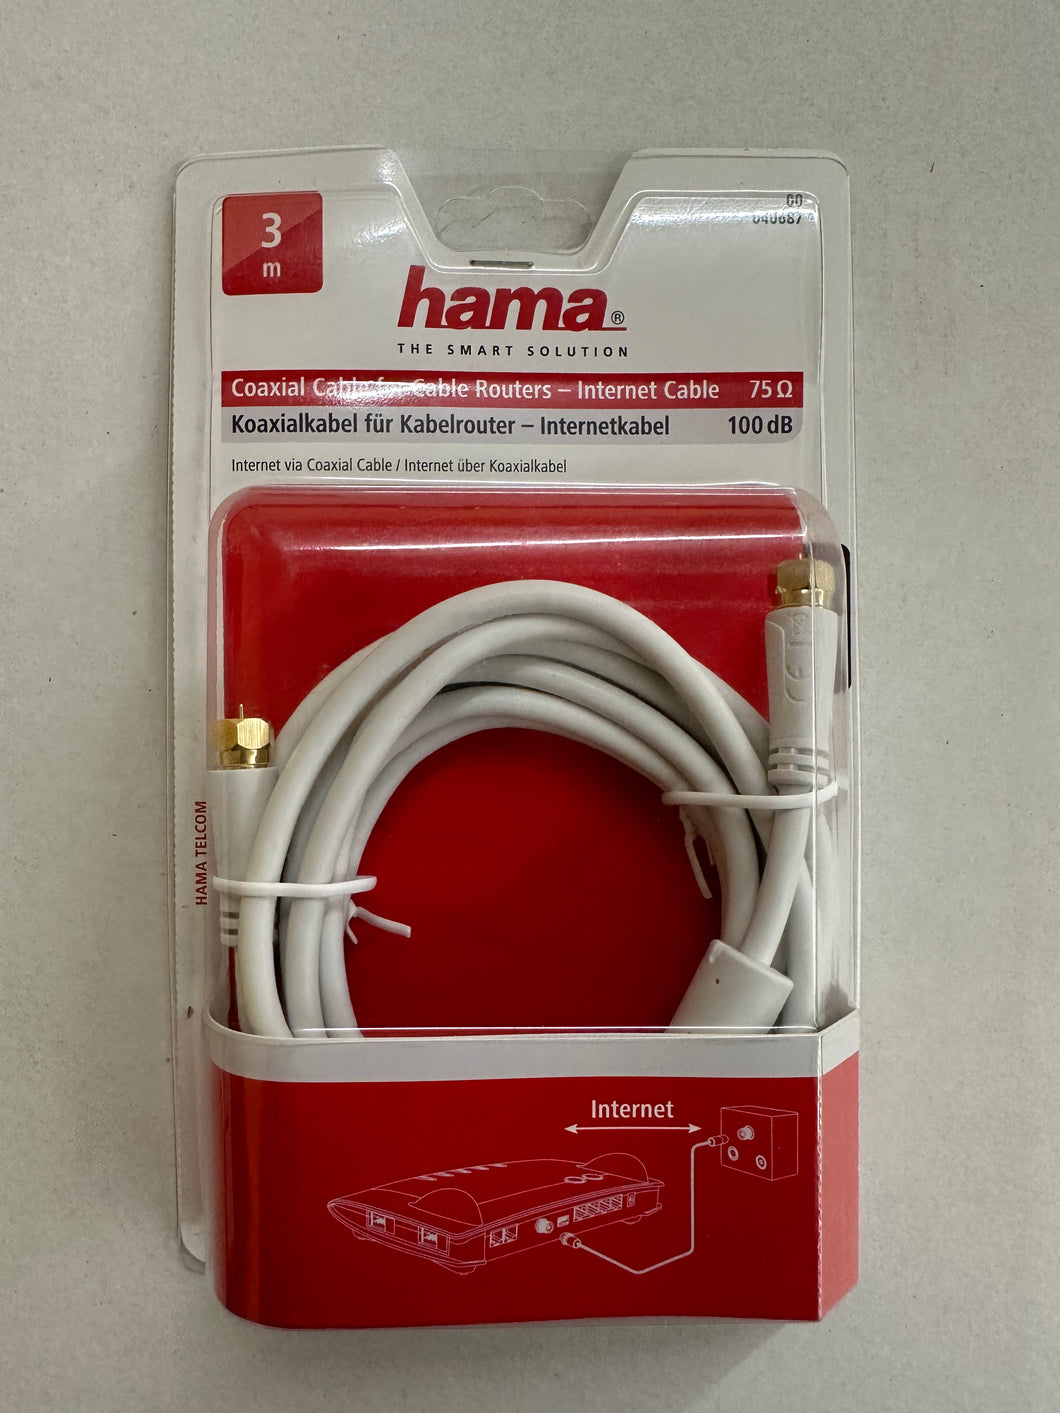 Hama 00040687 Koaxialkabel für Kabelrouter Netzwerk F-Stecker 75Ω 100dB 3m (Weiß